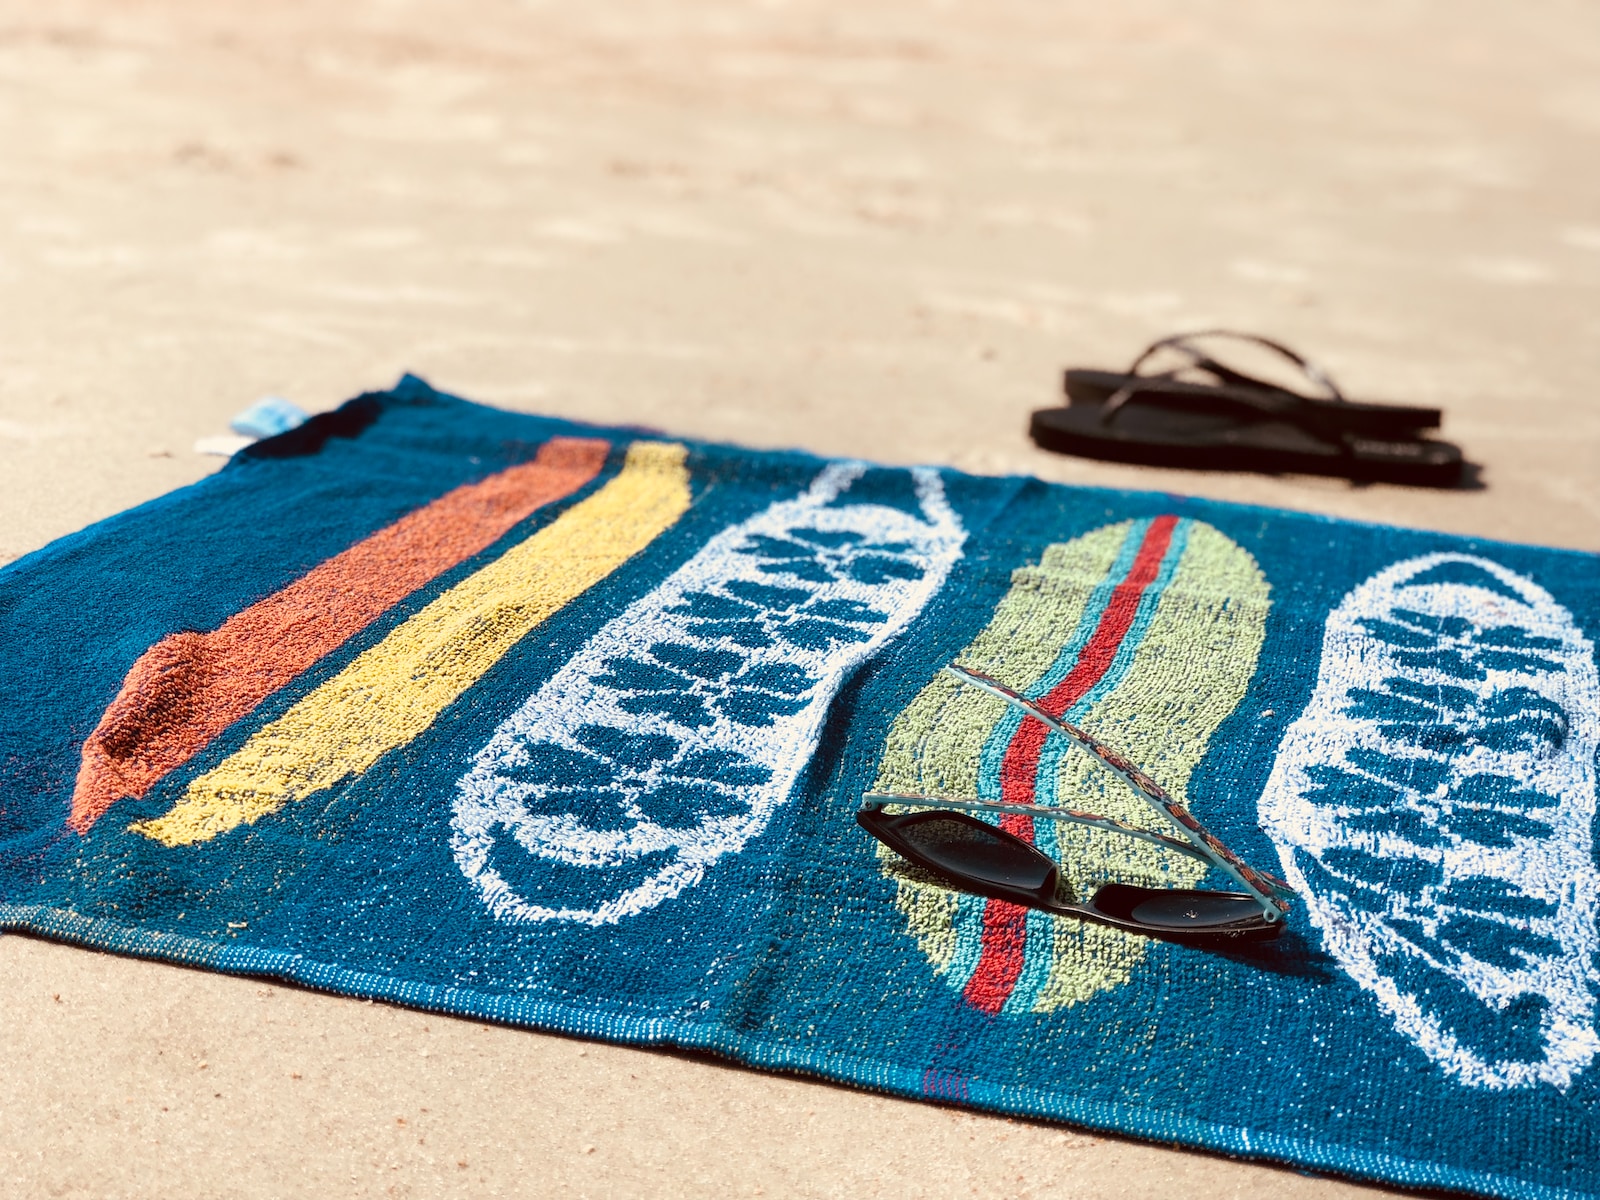 black sunglasses on blue towel beside pair of black flip-flops